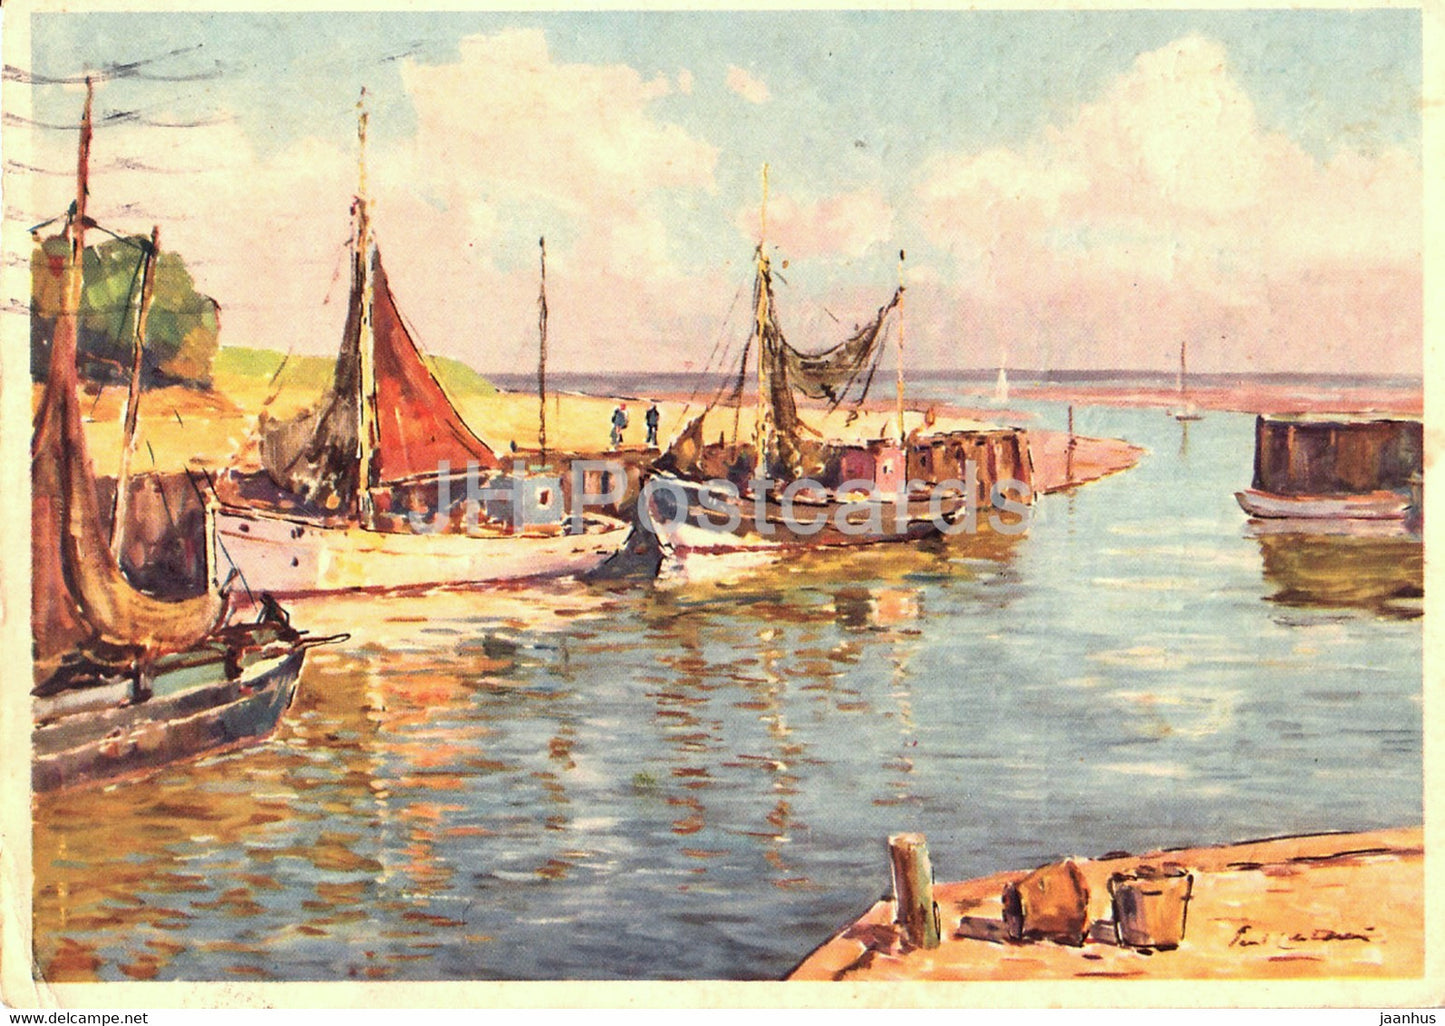 painting by Paul Ernst Wilke - Im Kunstenhafen - sailing boat - Eduscho - German art - 1966 - Germany - used - JH Postcards